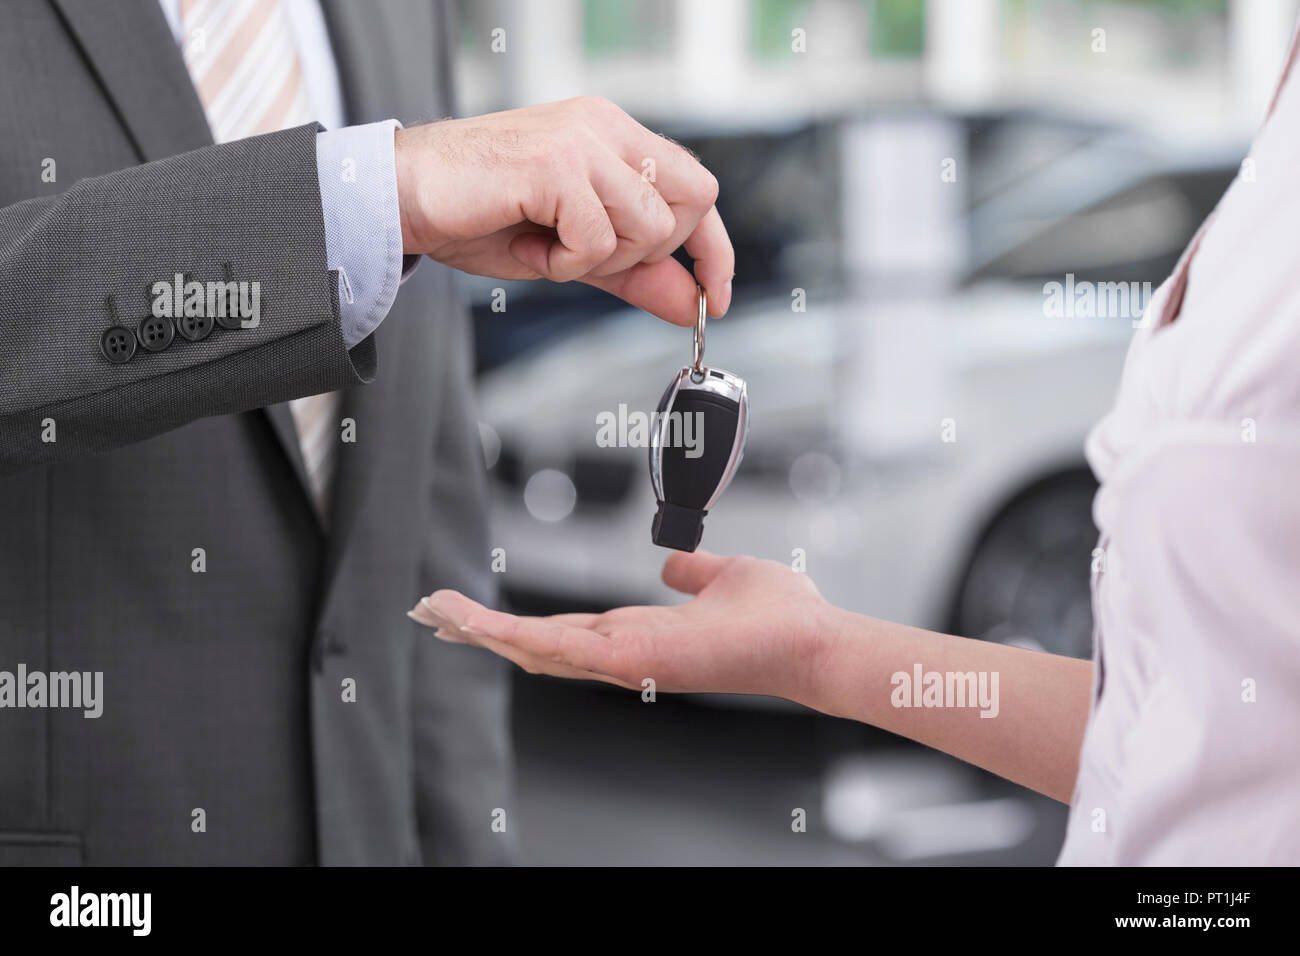 Bei der Kfz-Händler, Verkäufer, die Übergabe der Autoschlüssel an client Stockfoto